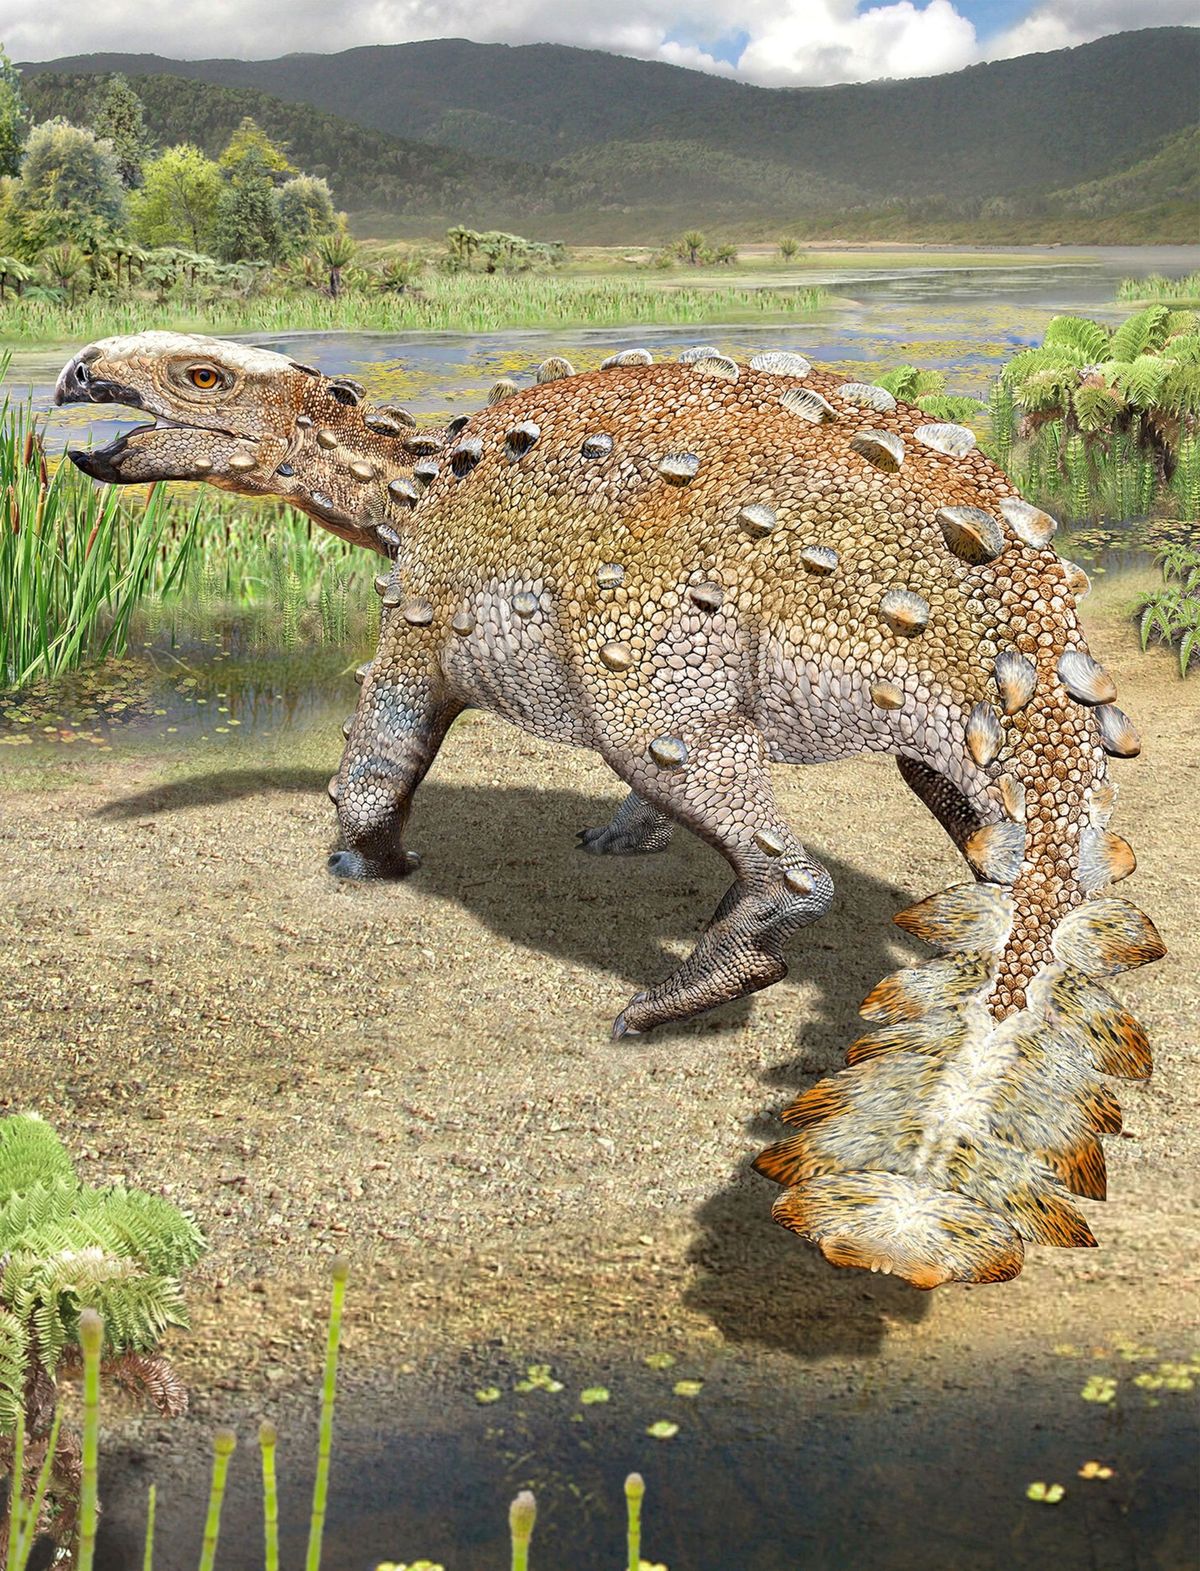 Zon 73 miljoen jaar geleden kwam een nieuw ontdekte dinosaurirsoort met een knotsachtige staart voor in een regio die nu het zuiden van Chili vormt Het dier leefde in een rivierdelta met een weelderige vegetatie zoals in deze illustratie is uitgebeeld